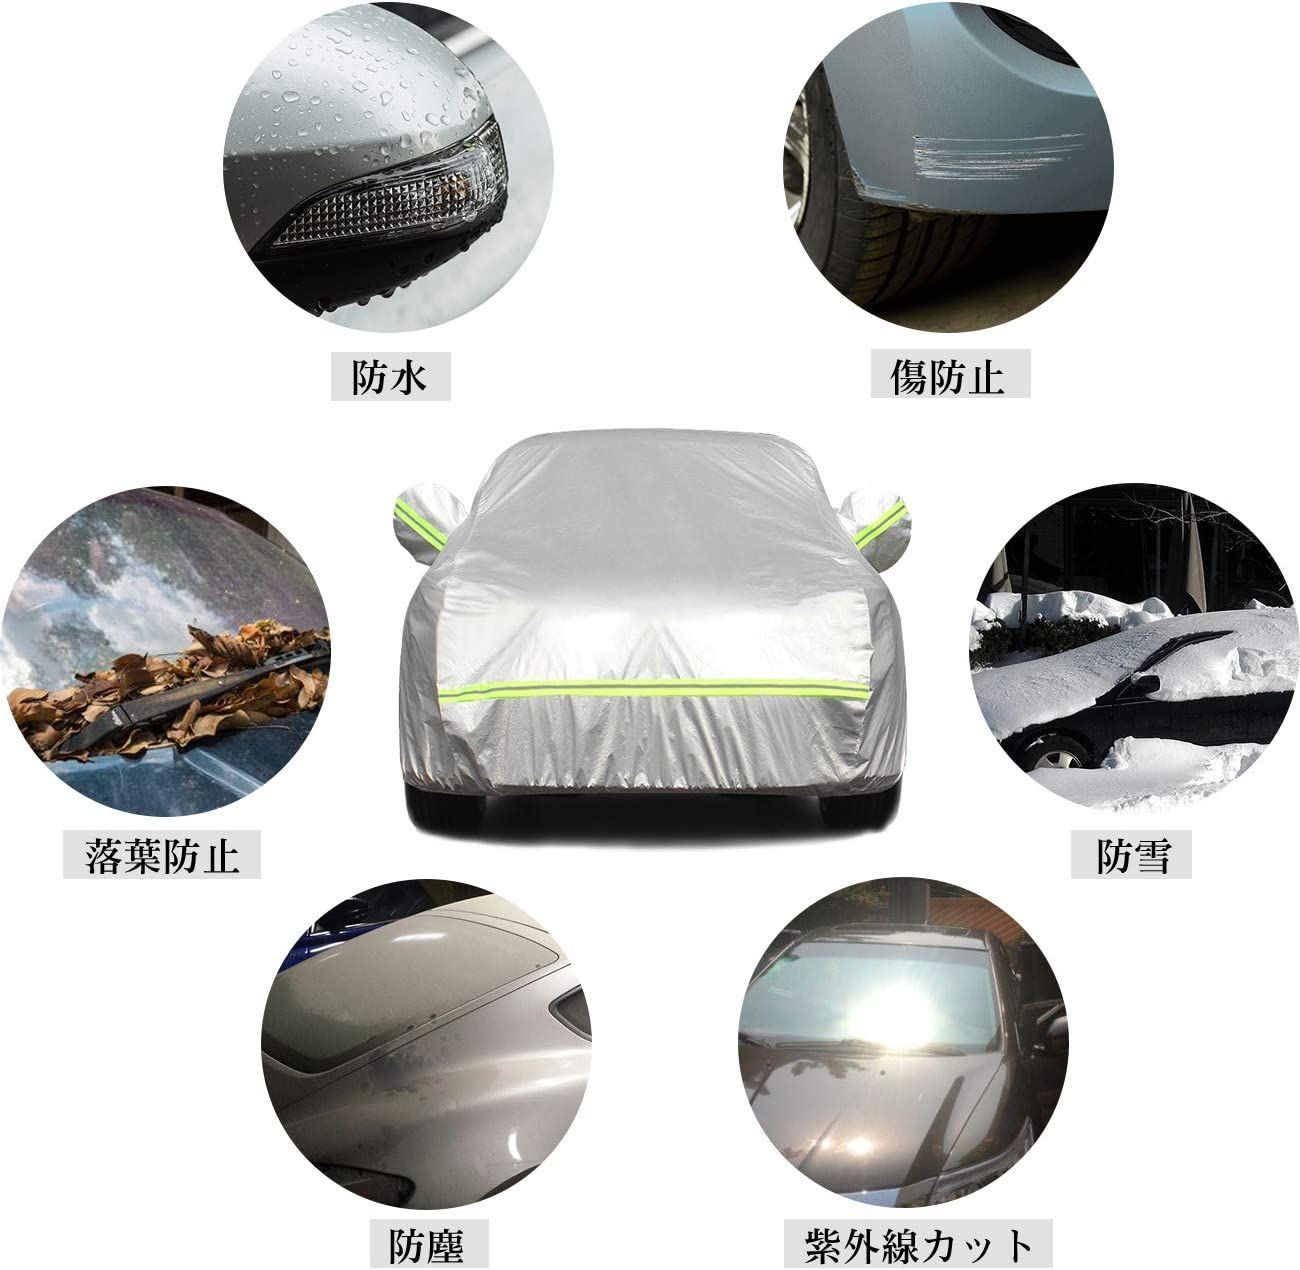 平山産業 車用カバー ニューパックインカバー 2型 - 3